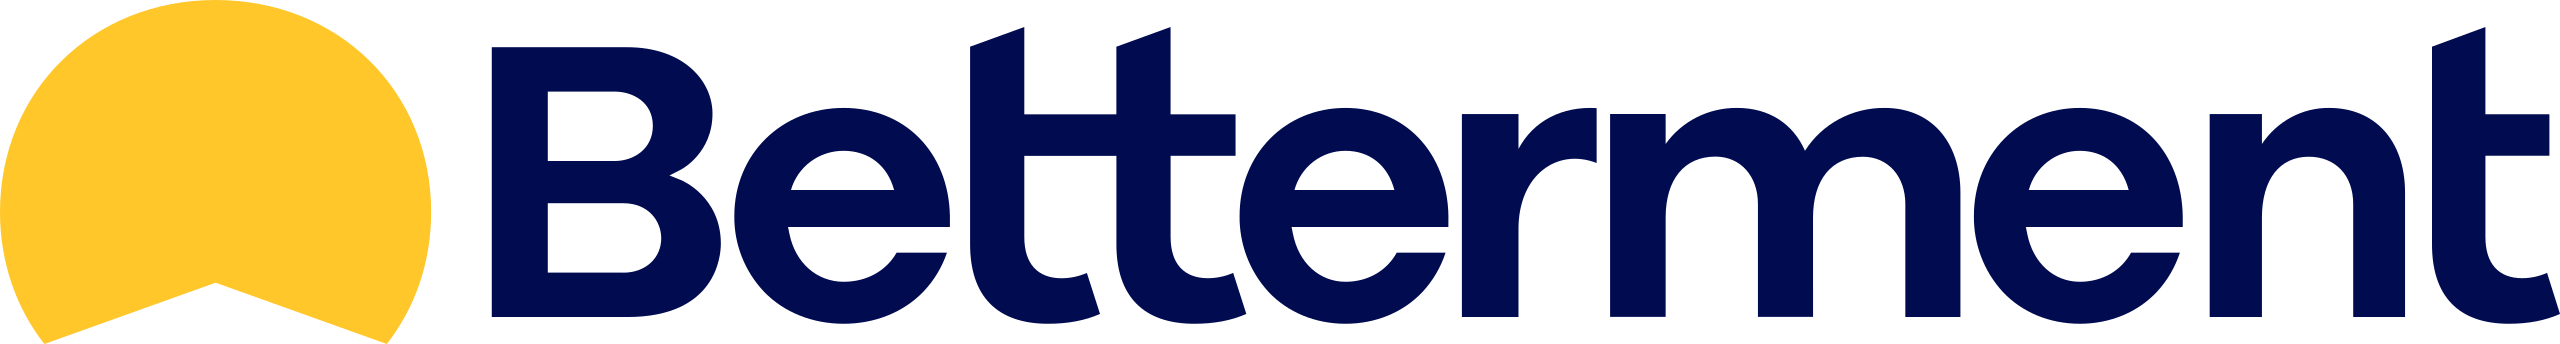 logo-betterment